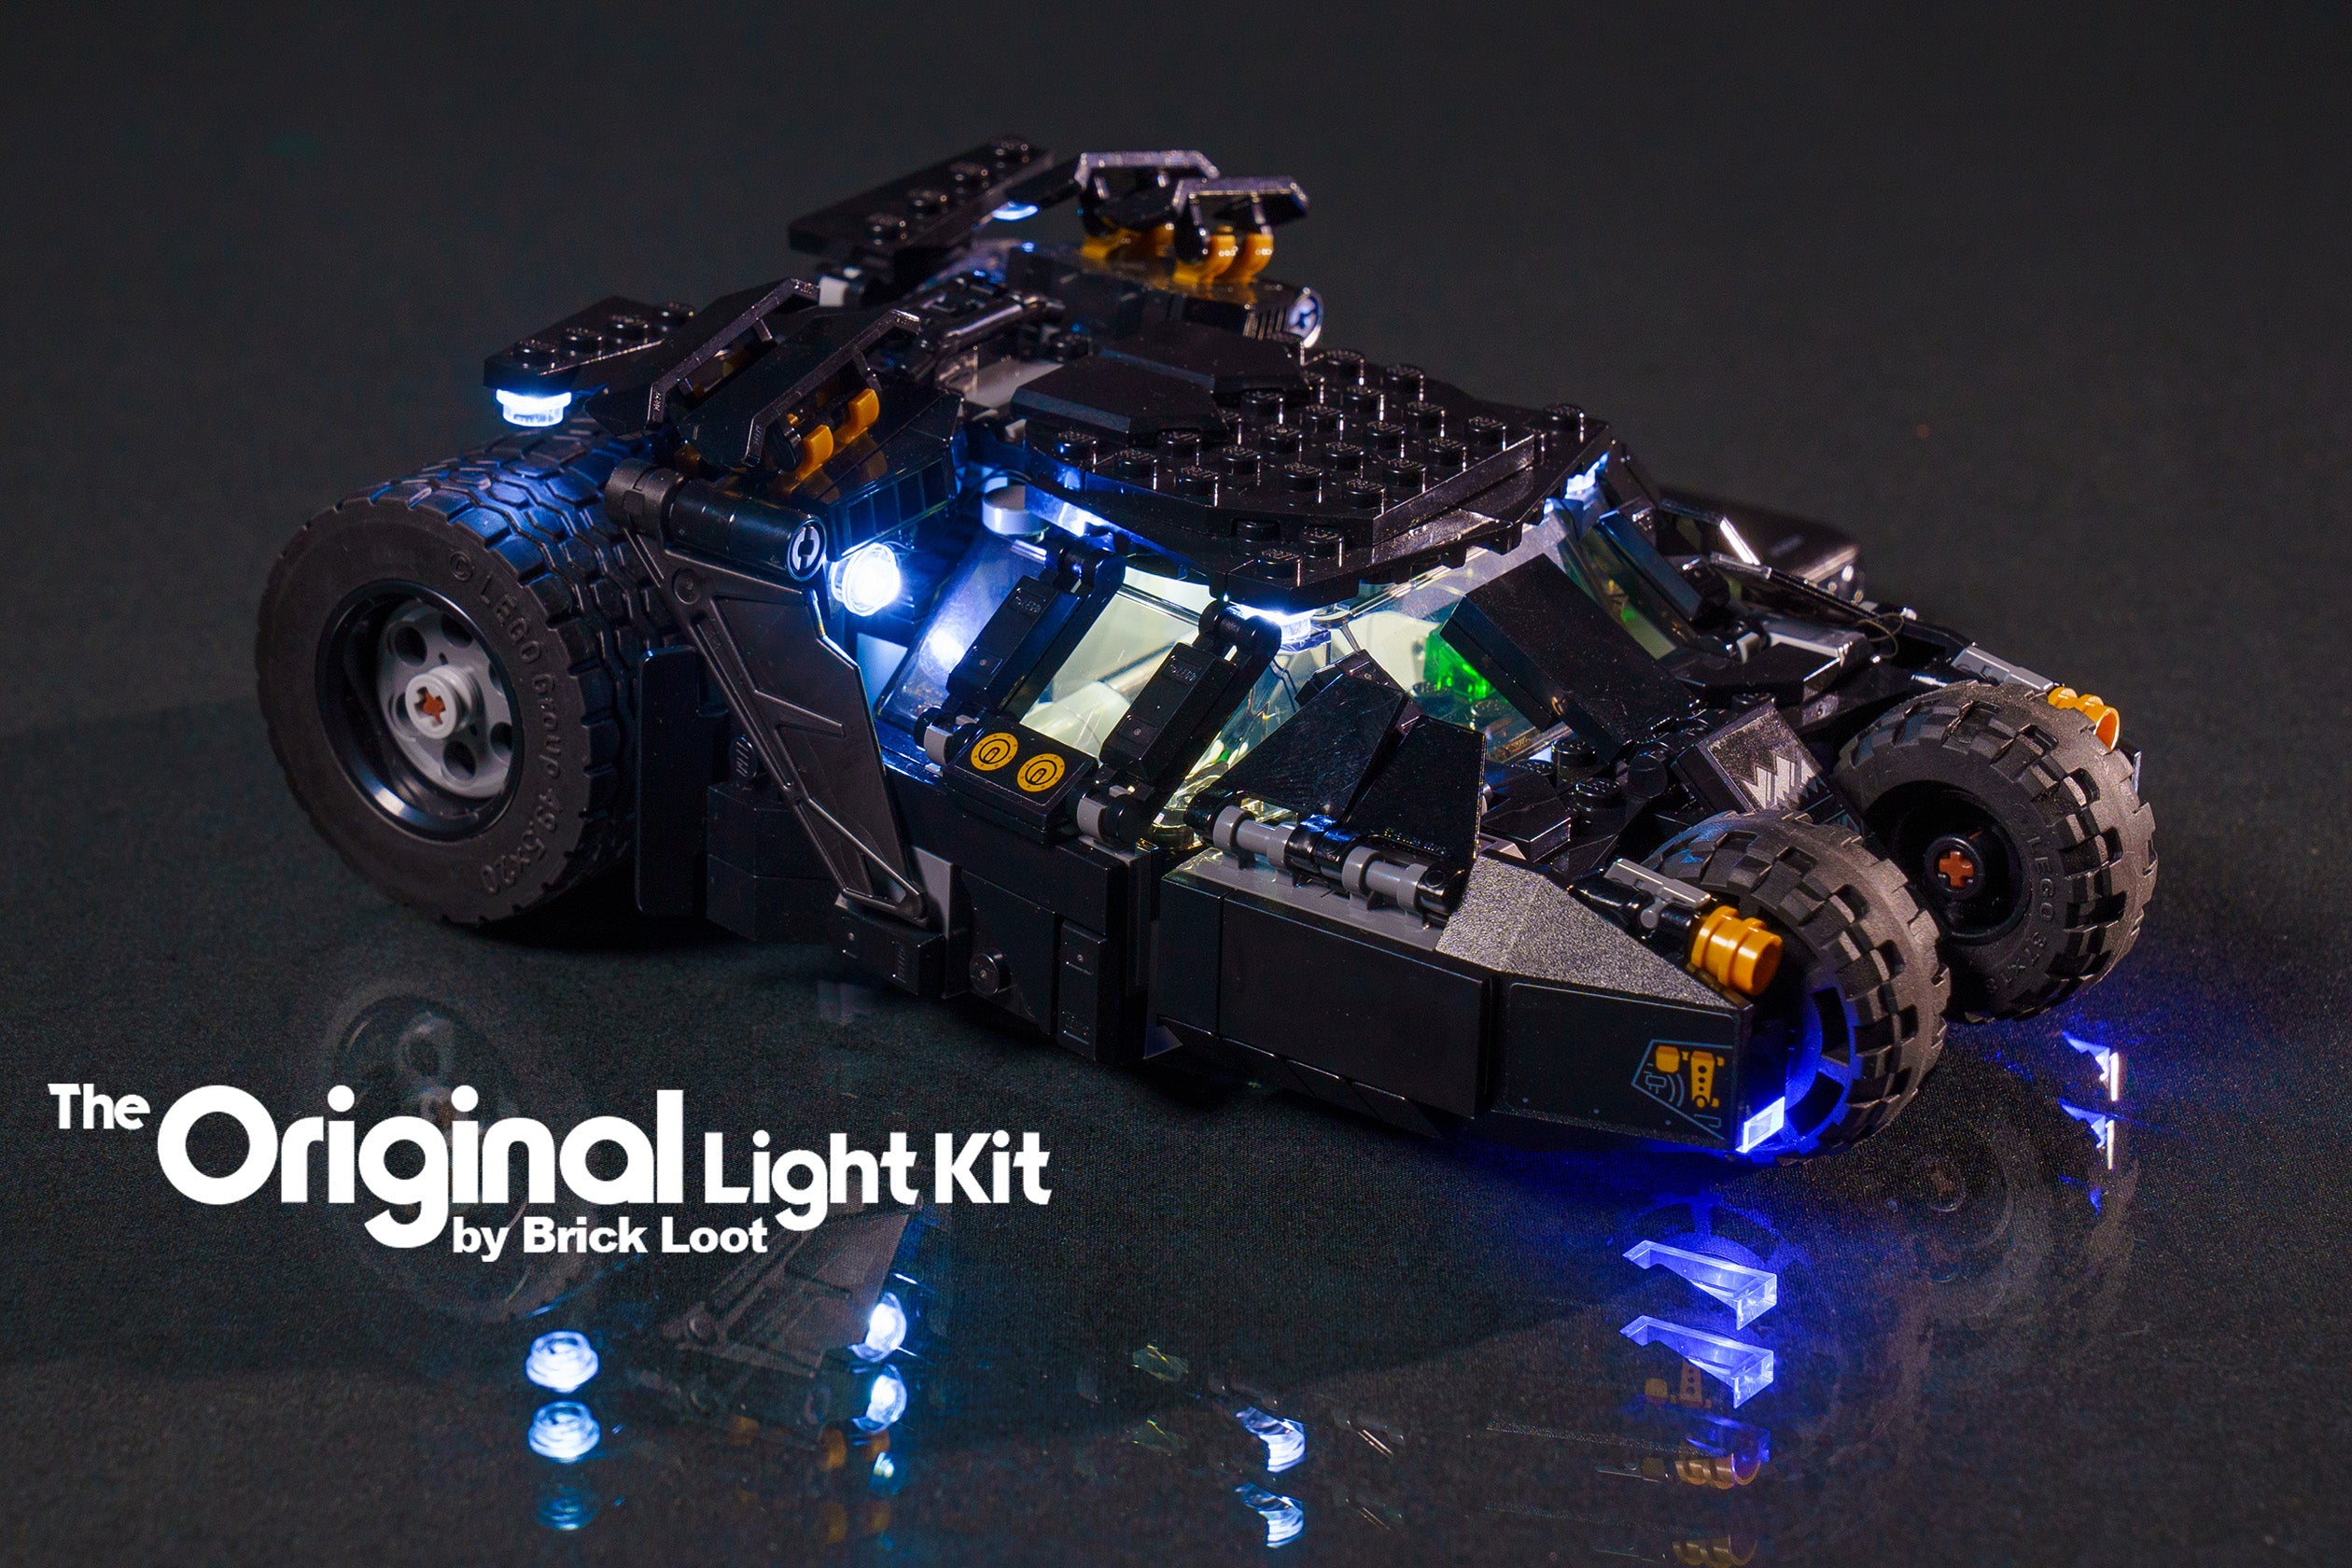 Lego DC Batman Batmobile Tumbler 76240 Light Kit(Don't Miss) – Lightailing